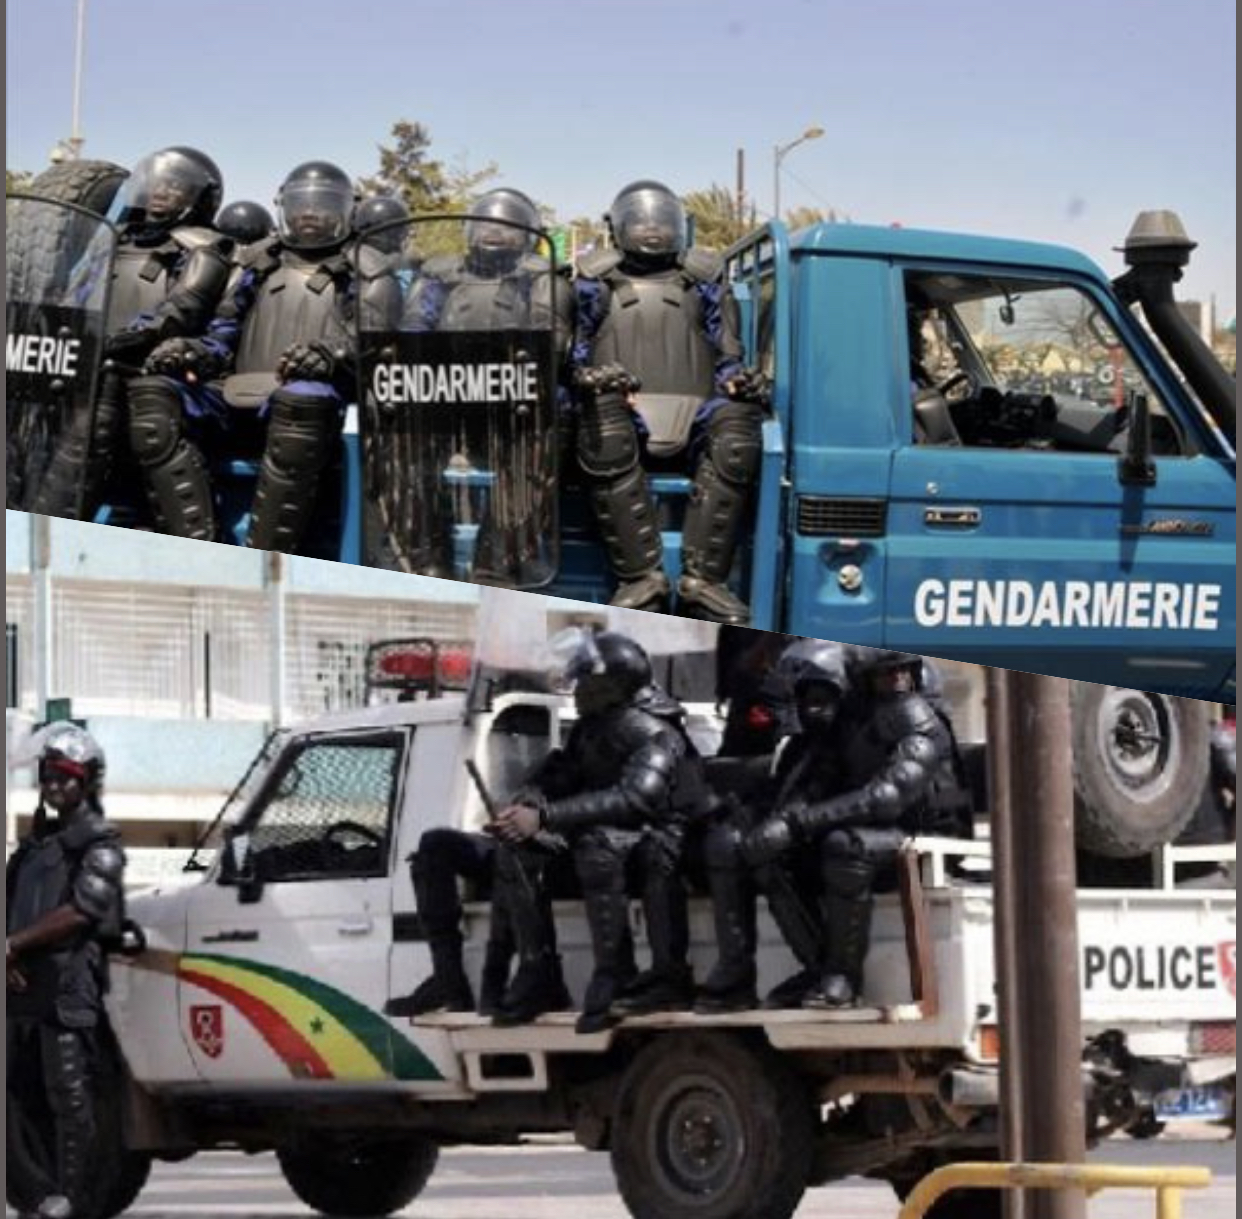 Opération de sécurisation Police-Gendarmerie à Dakar : 463 personnes interpellées, 2,375 kg de drogue et 27 cornets de cannabis saisis